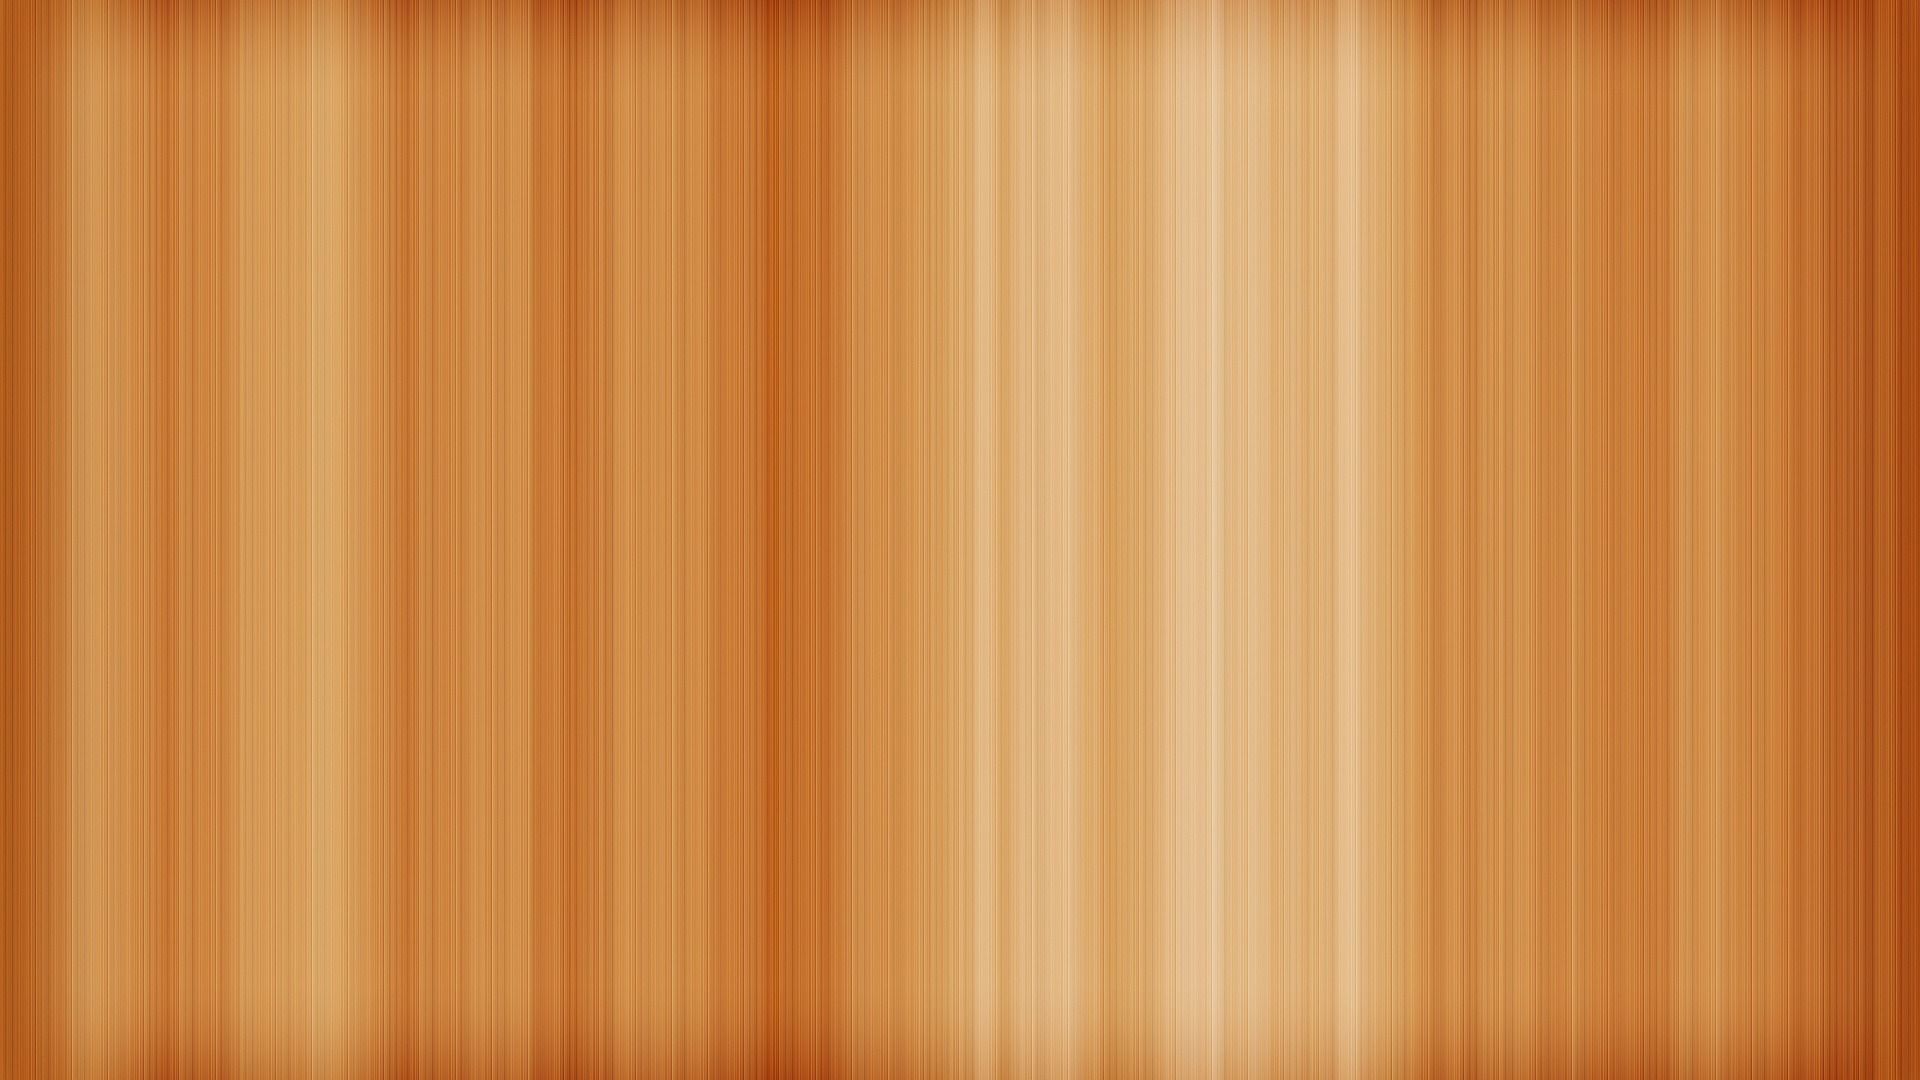 HD Quality Wood Wallpaper HD - SiWallpaper 19030